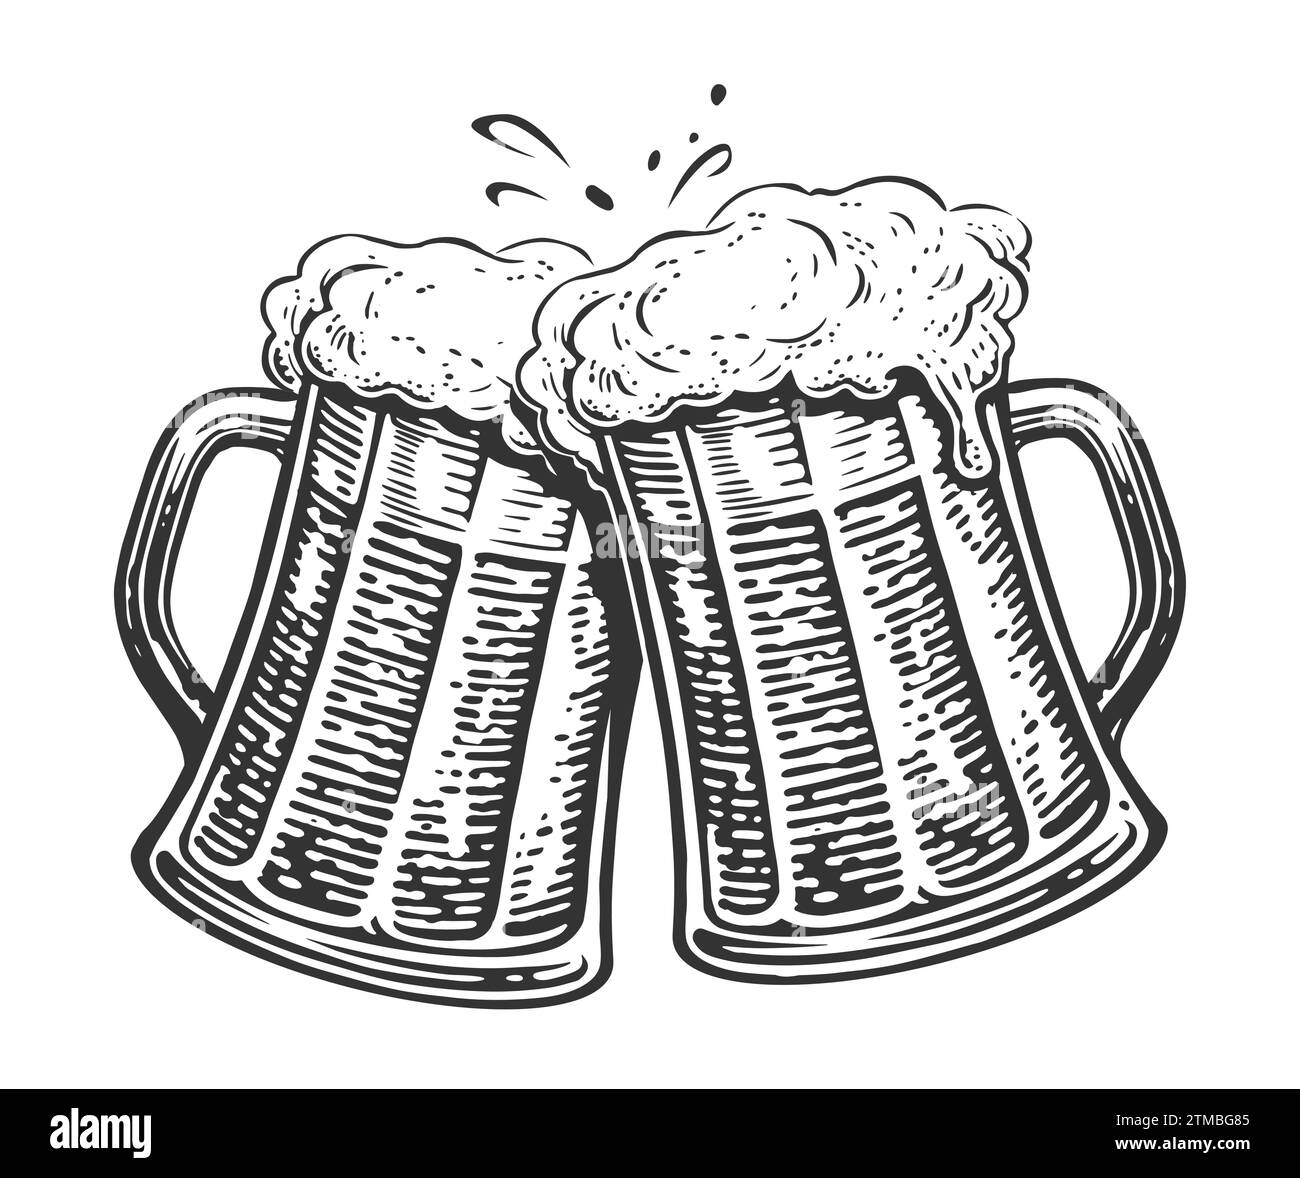 Zwei Bierbecher zum Toasten. Klirrende Glasbehälter voller Bier und Schaumspritzer. Applaus, Illustration Stock Vektor